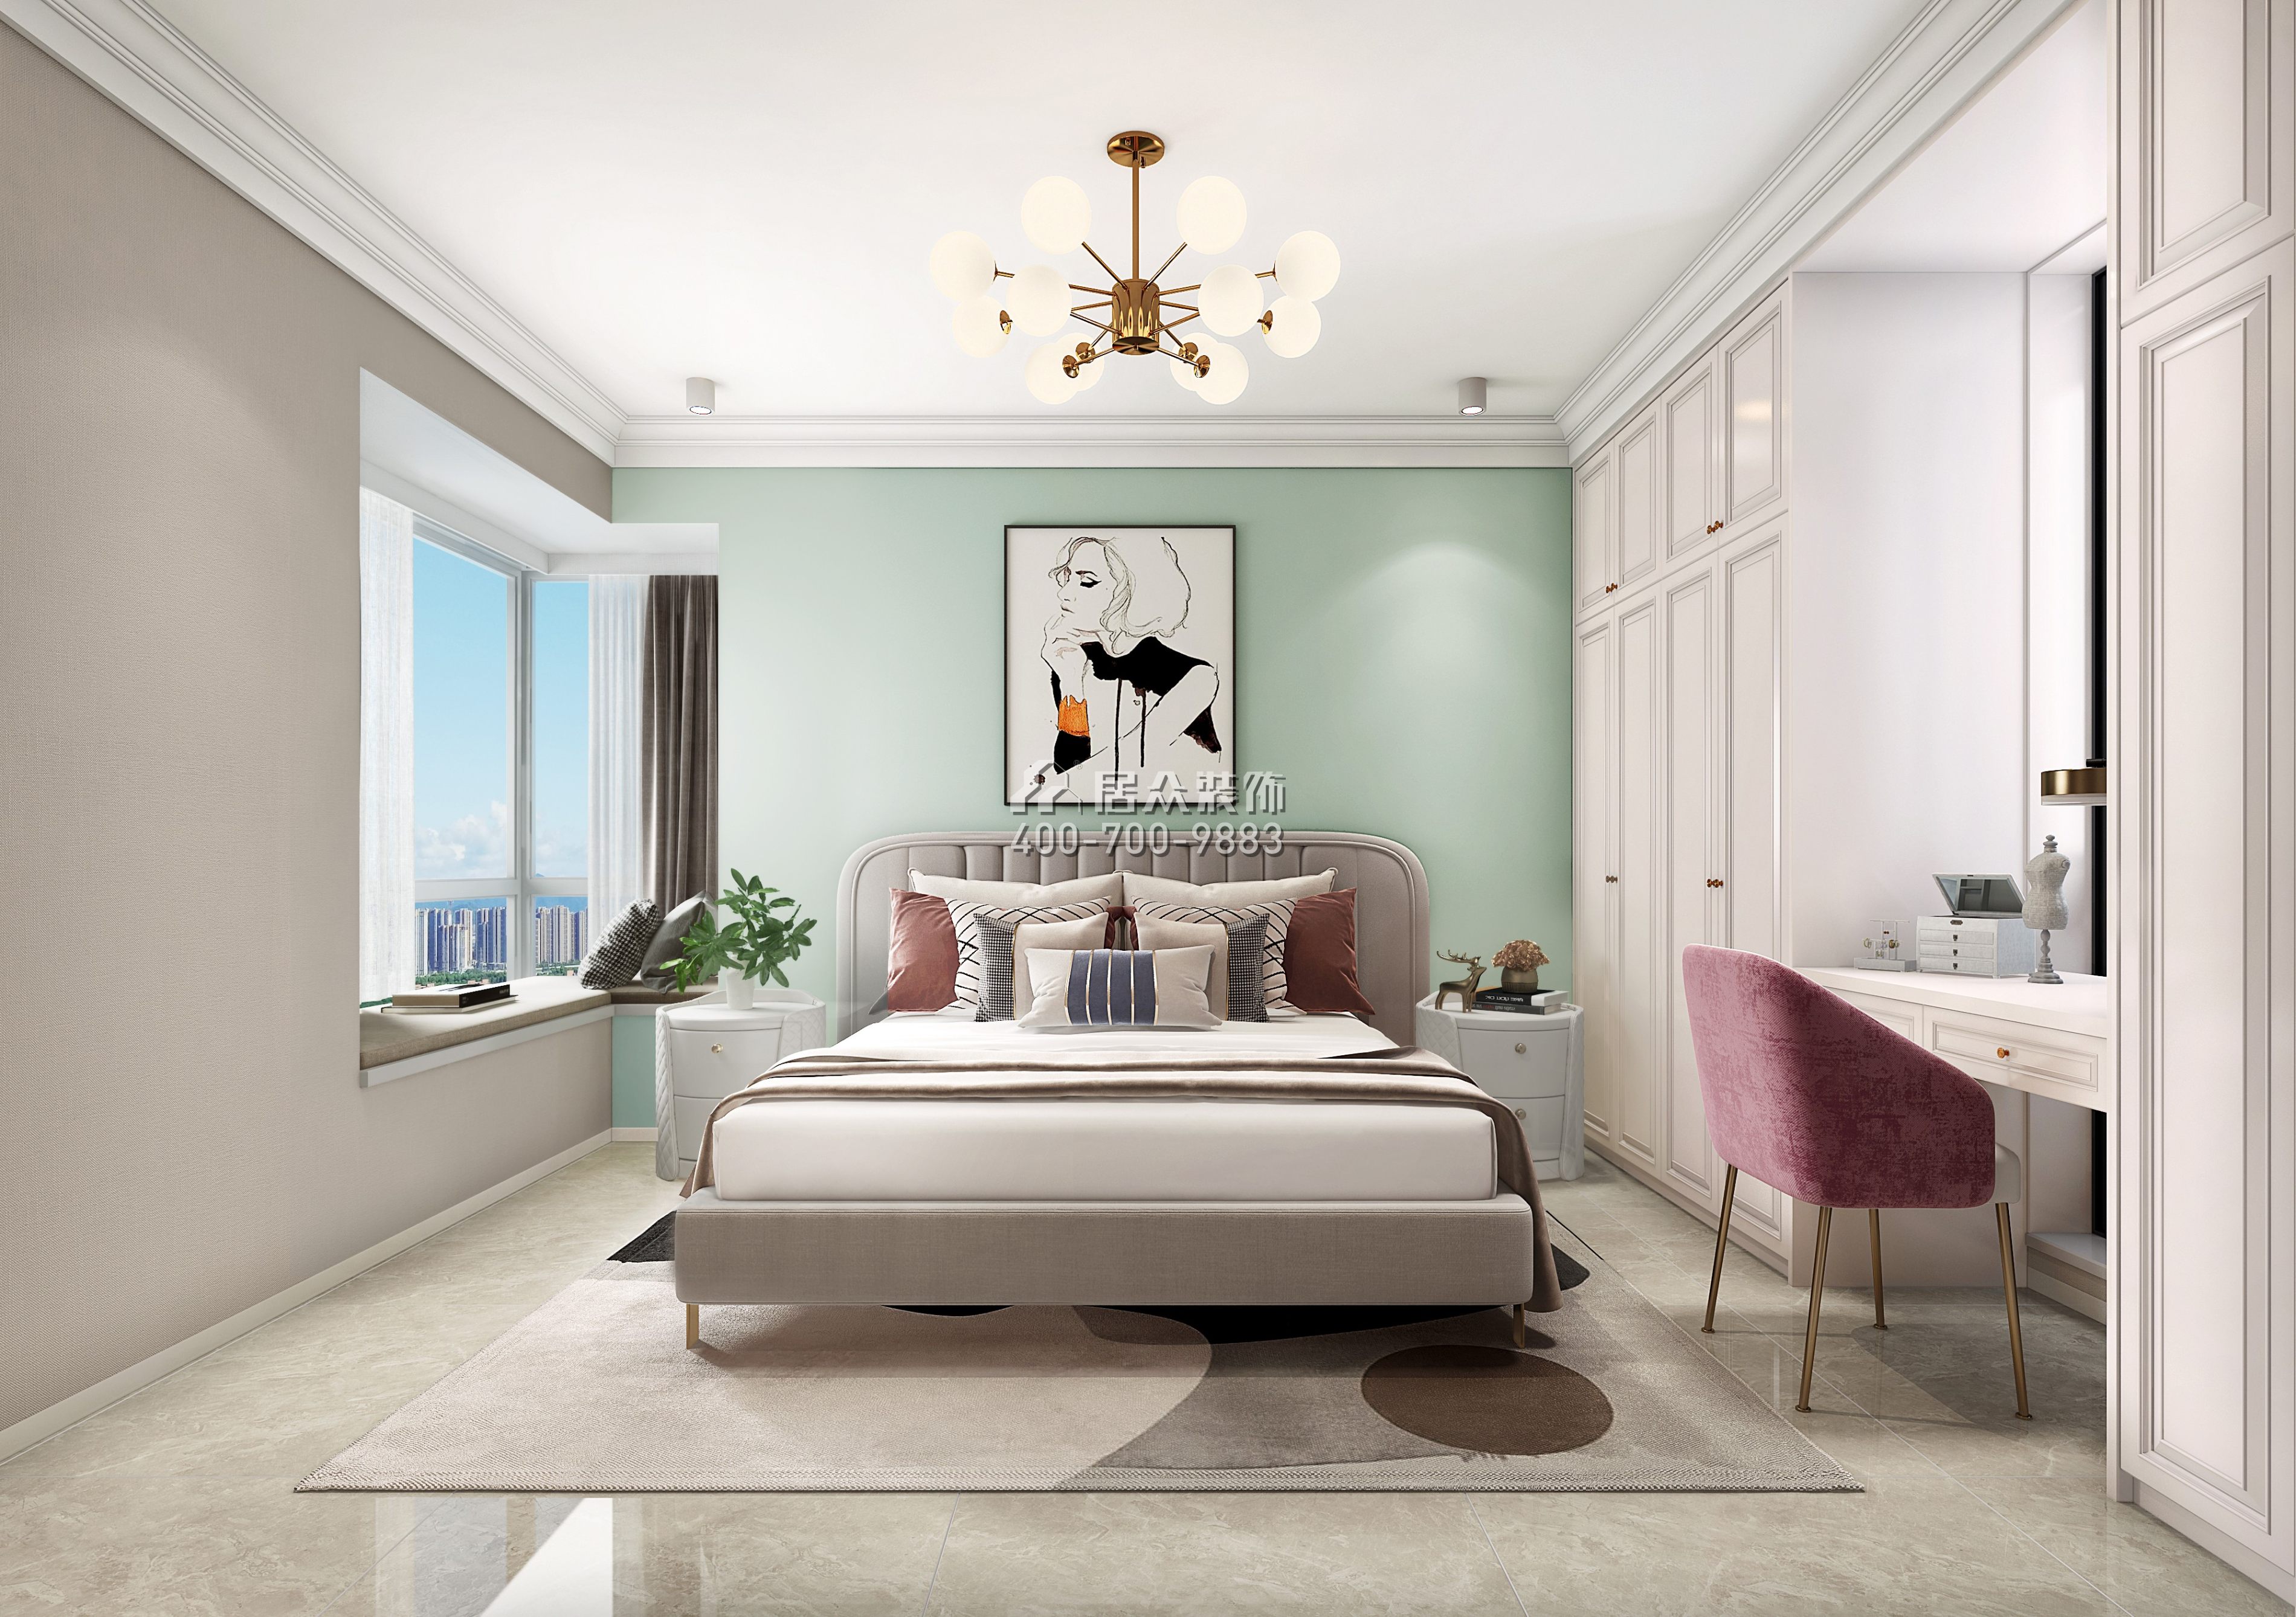 郁金香家园100平方米美式风格平层户型卧室装修效果图